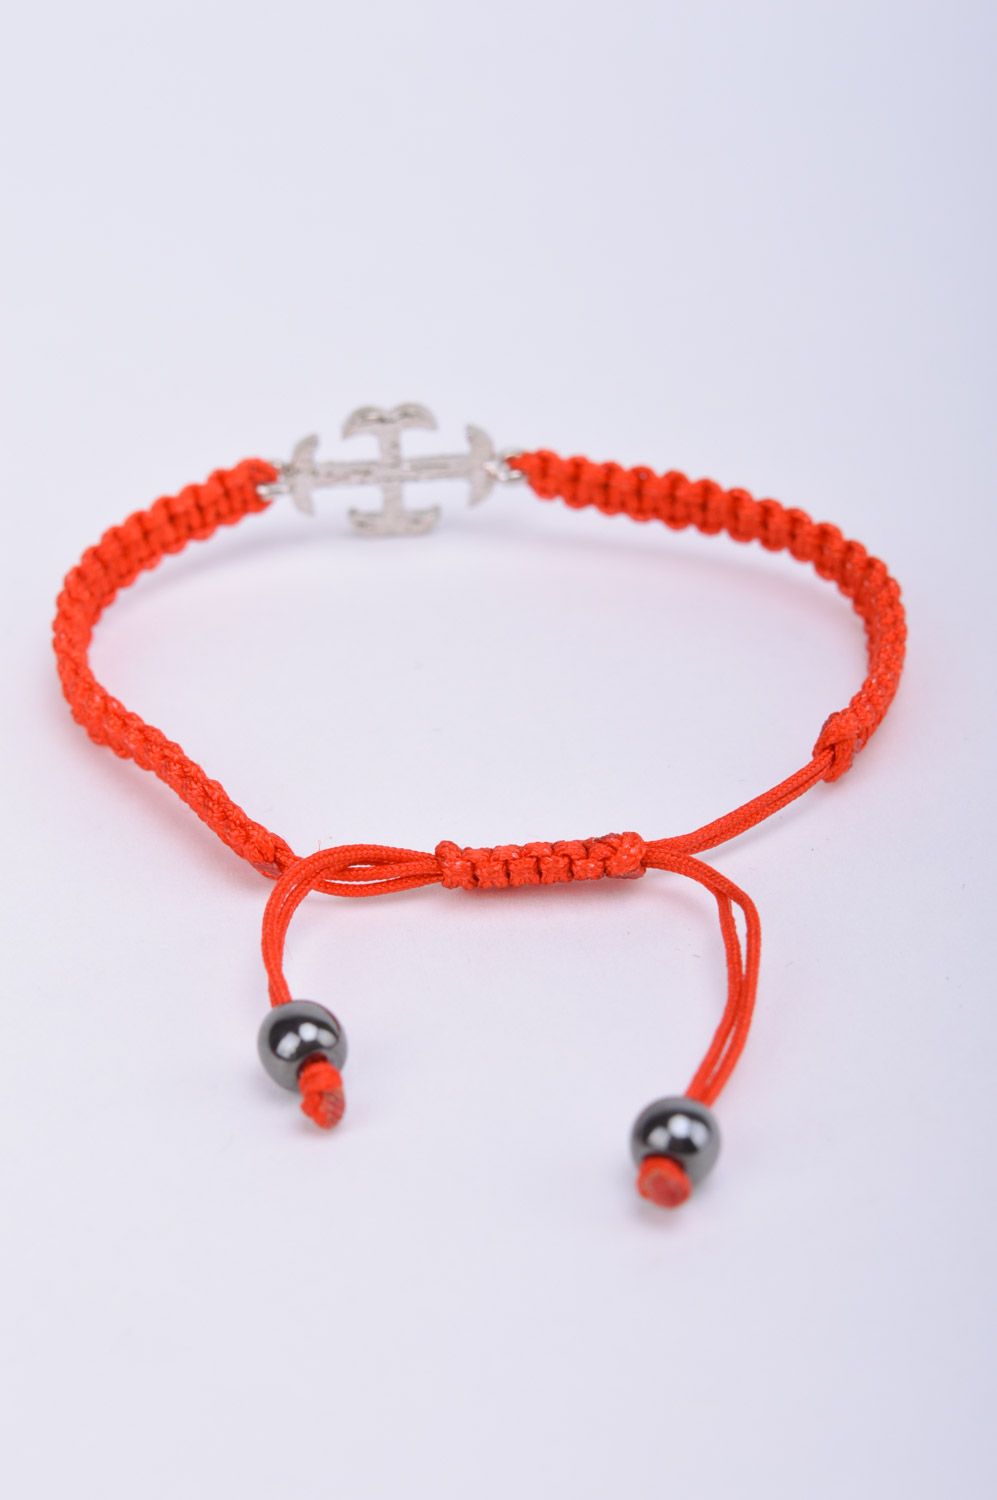 Красный браслет из ниток плетеный вручную с металлической подвеской-крестом фото 5